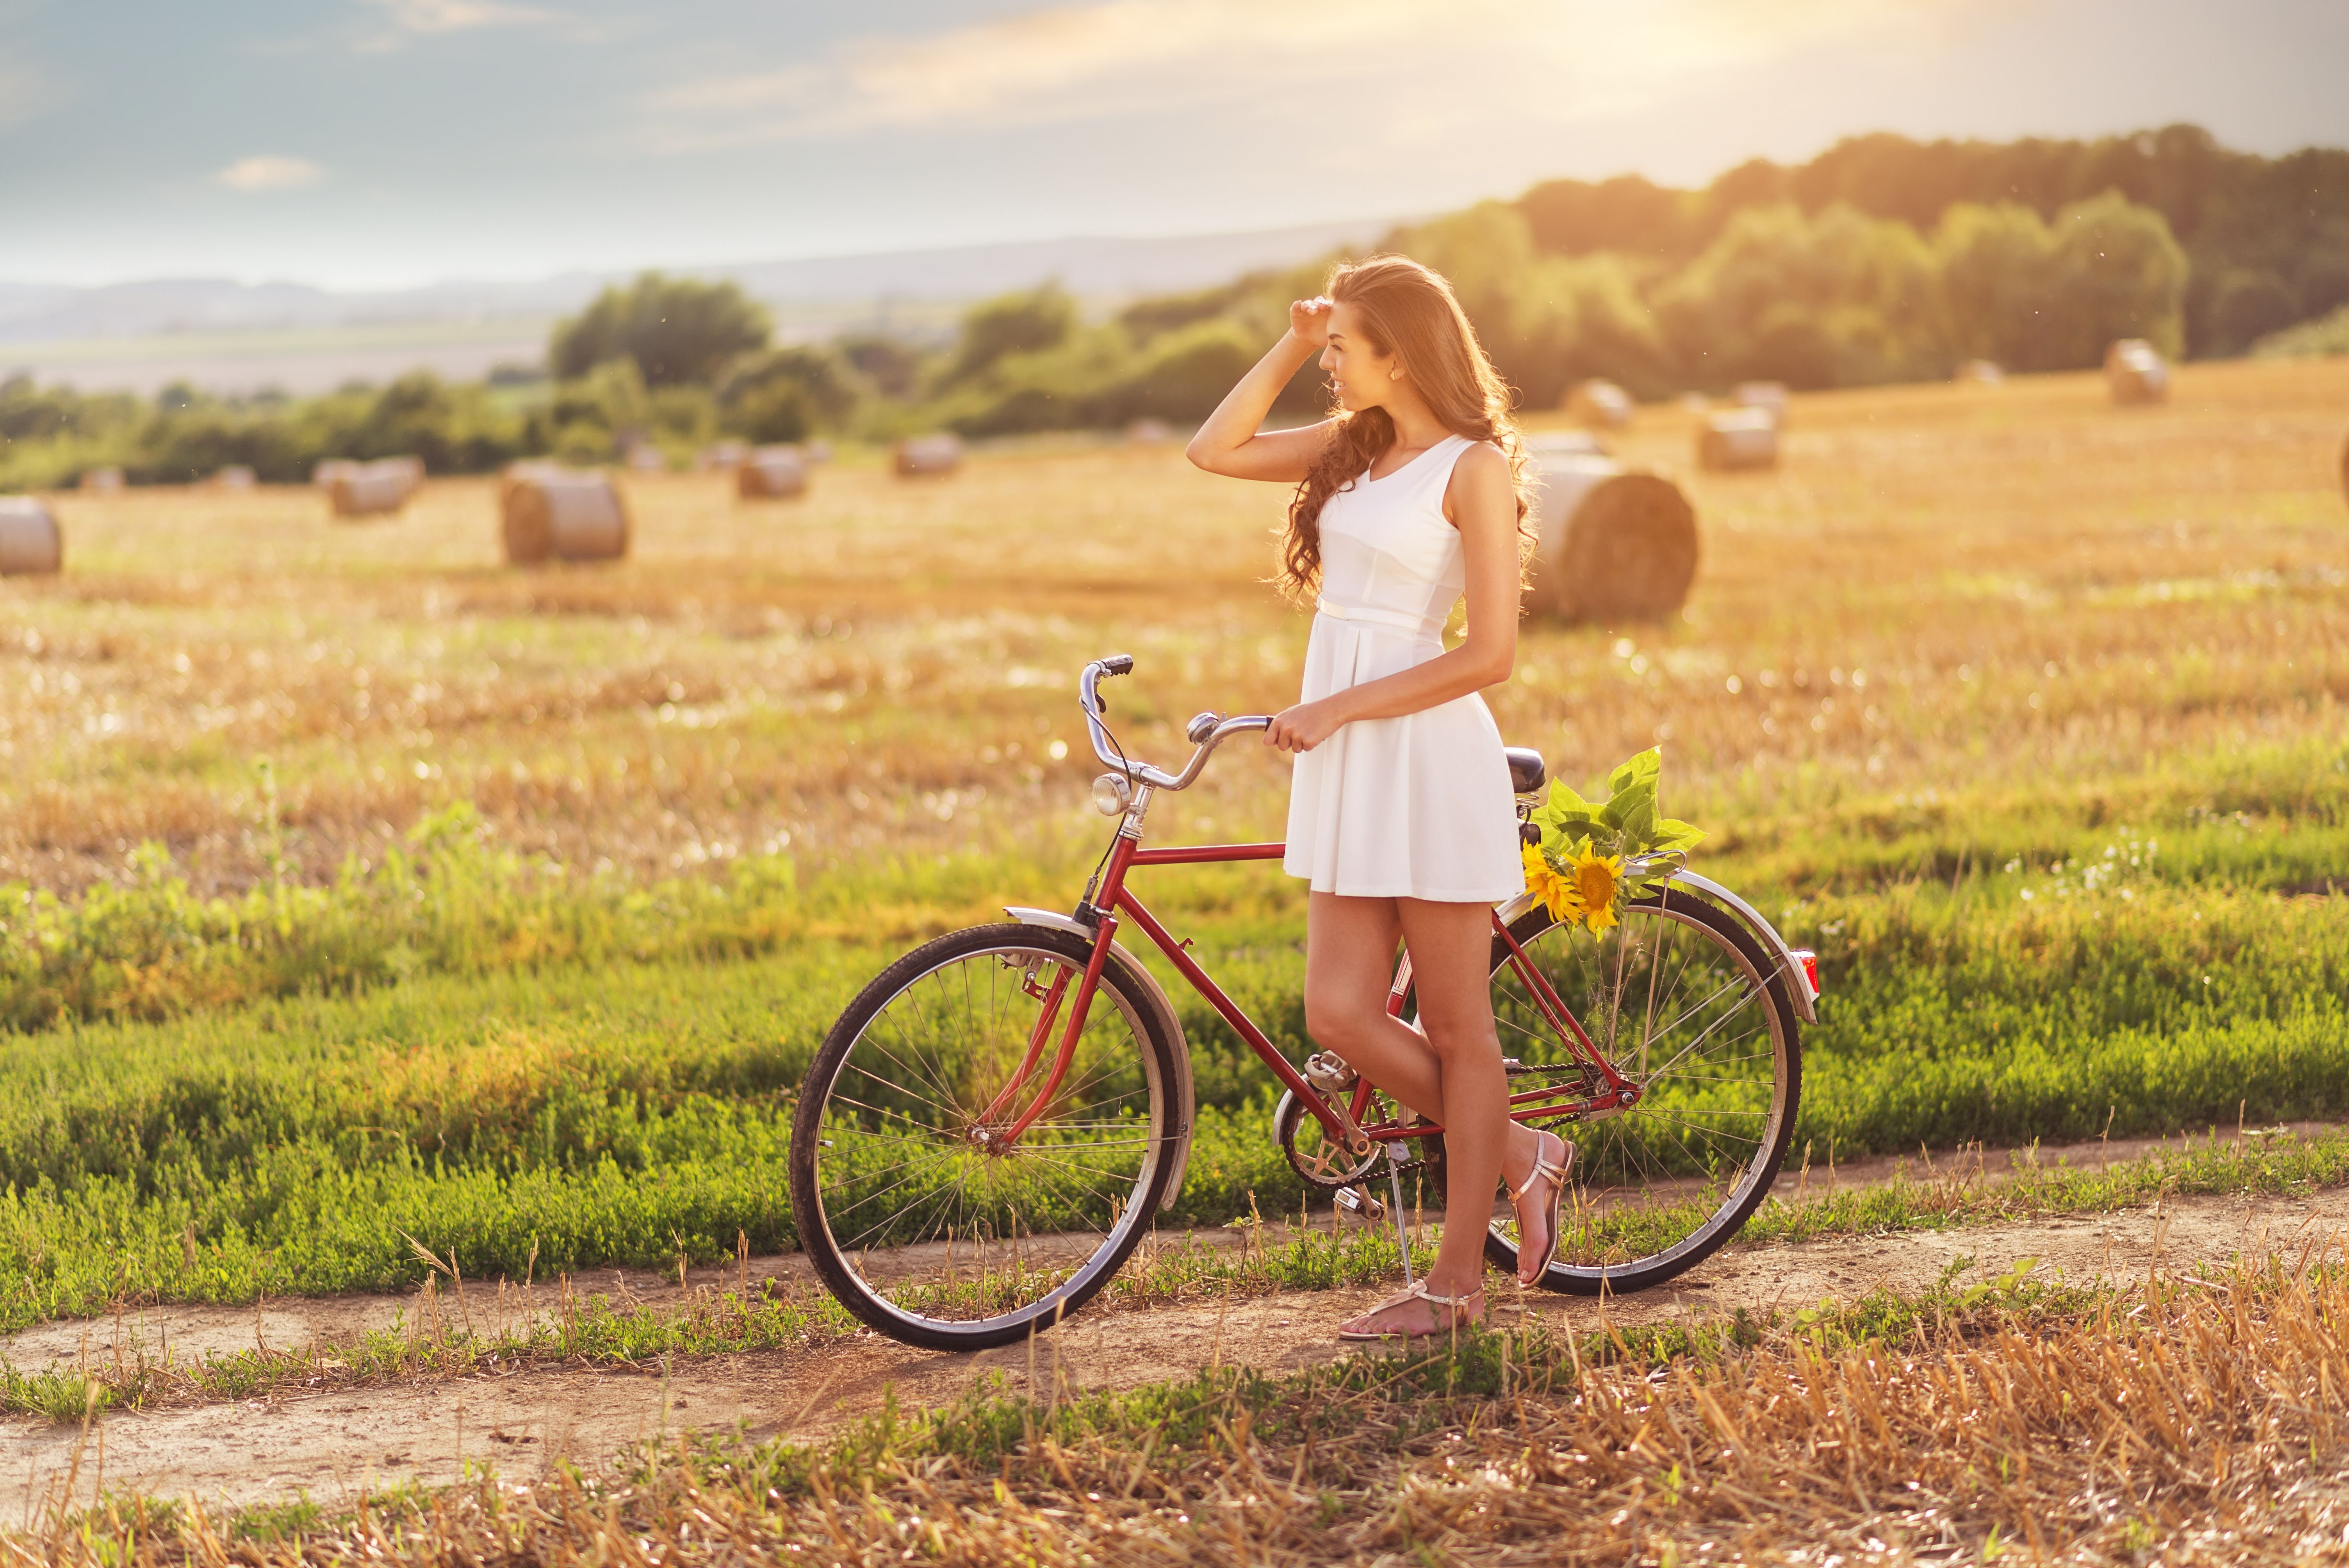 Фотографии с великом. Девушка на велосипеде. Красивые велосипеды. Красивые девушки на велосипеде. Девушка на велосипеде в деревне.